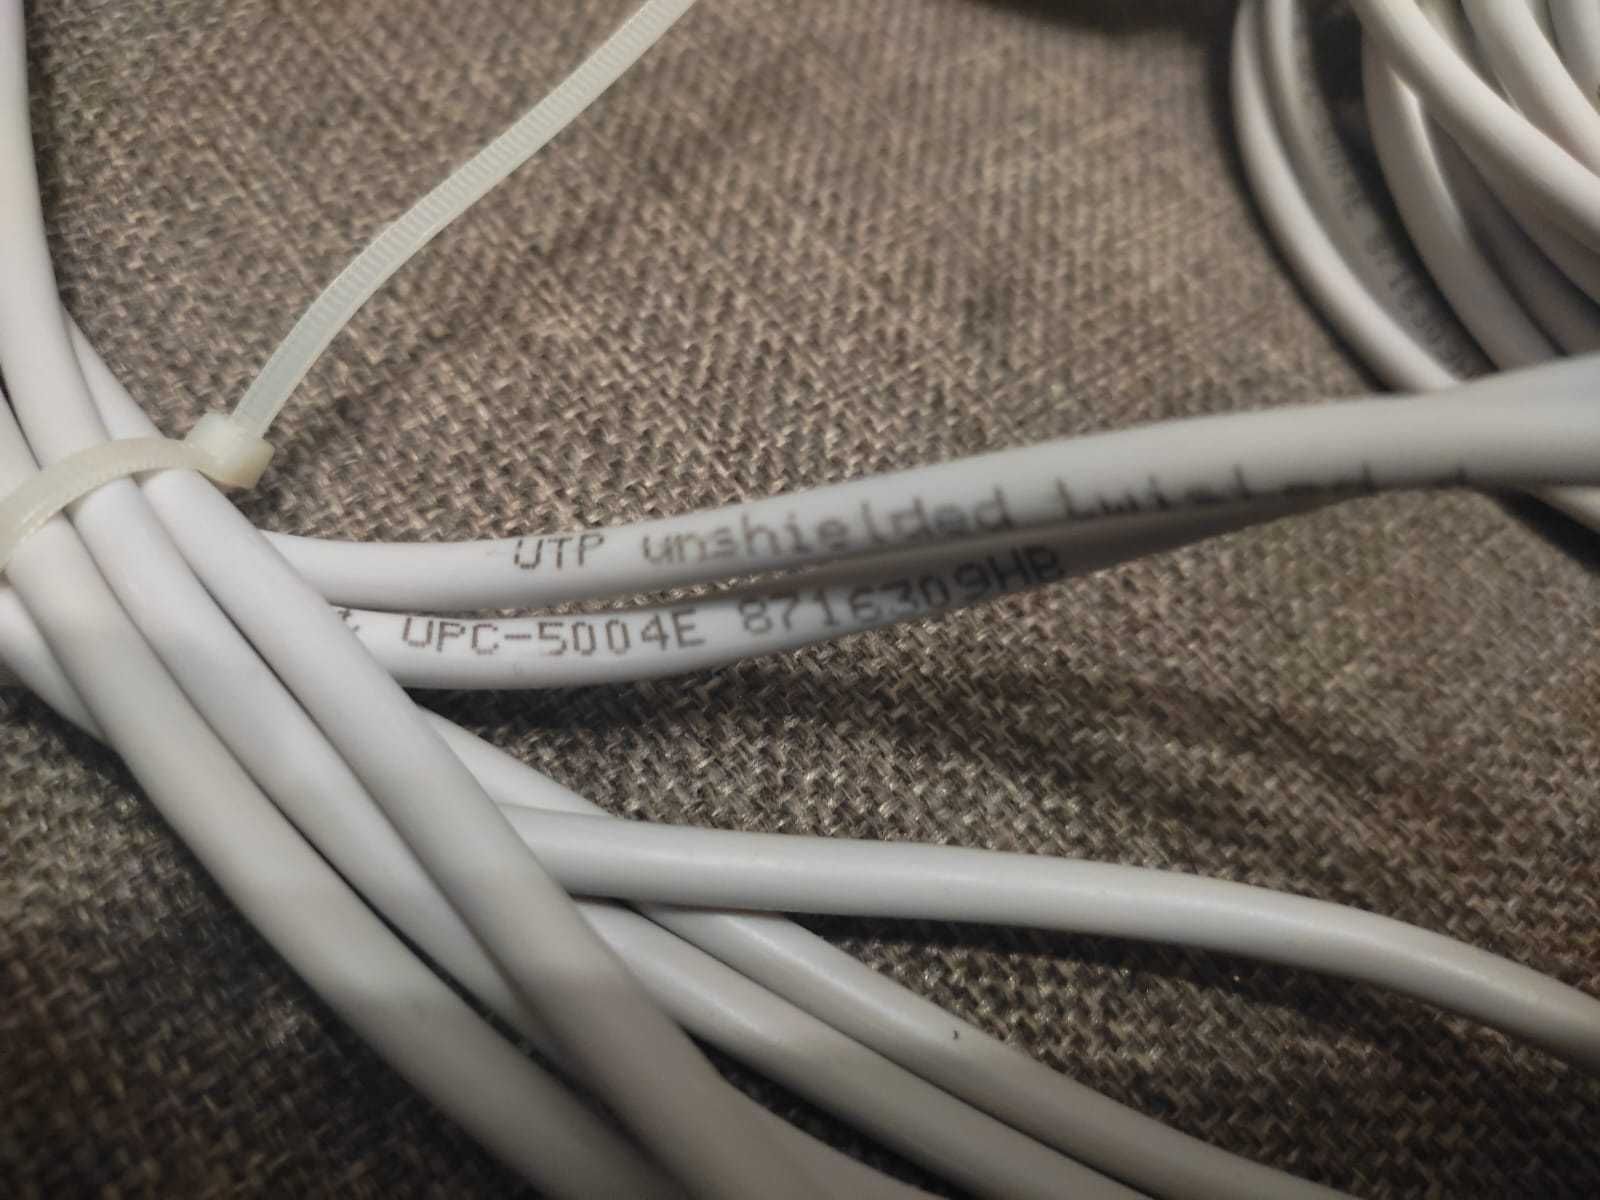 Сетевой интернет кабель витая пара разной длины обжатые и не обжатые